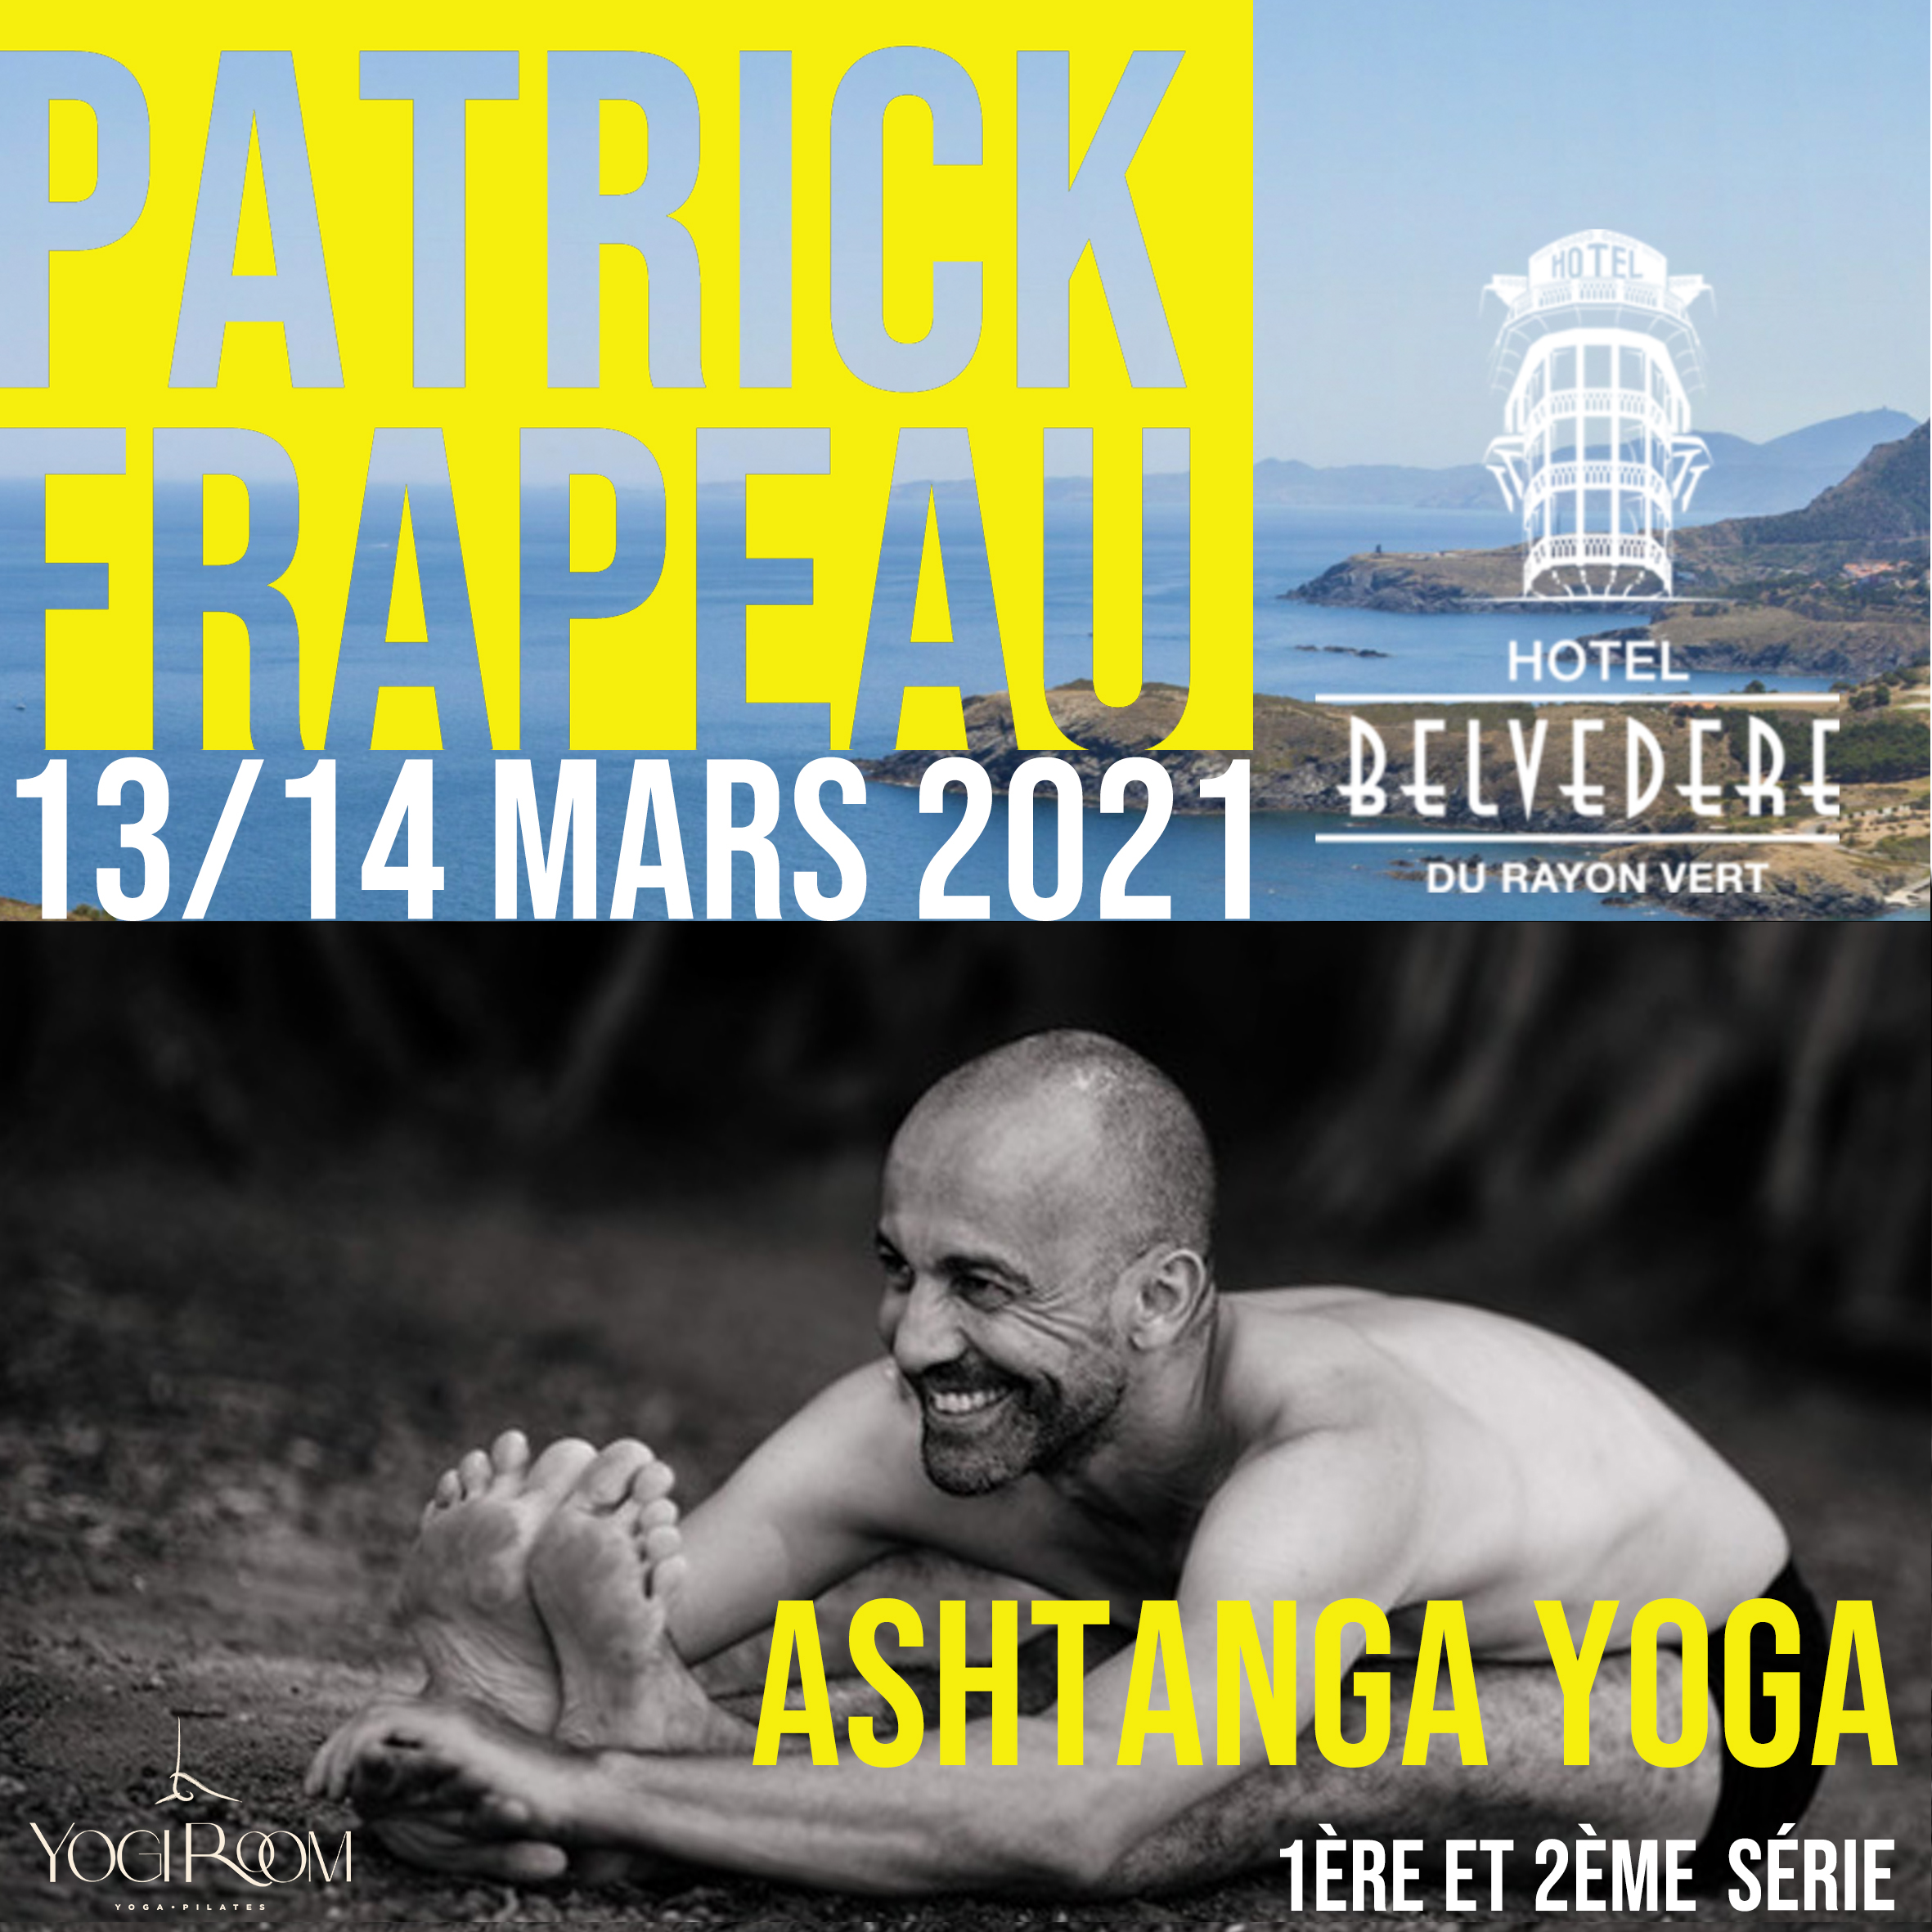 ashtanga, patrick frapeau, yoga, Paris